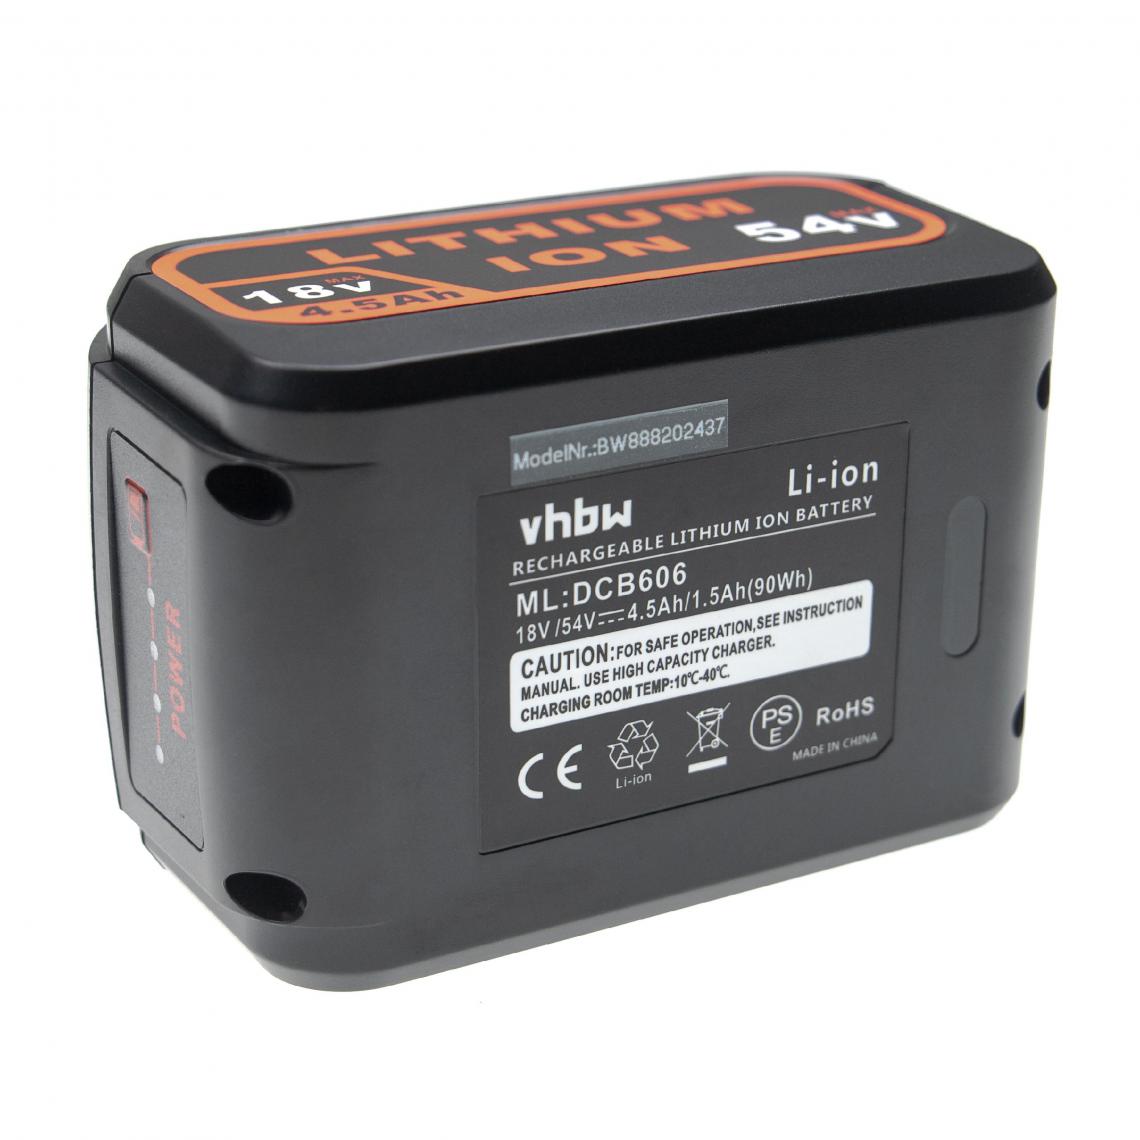 Vhbw - vhbw Batterie compatible avec DeWalt DCS331L2, DCS331M1, DCS331N, DCS355, DCS373M2 outil électrique (4500 mAh, Li-ion, 18 V / 54 V) - Accessoires vissage, perçage